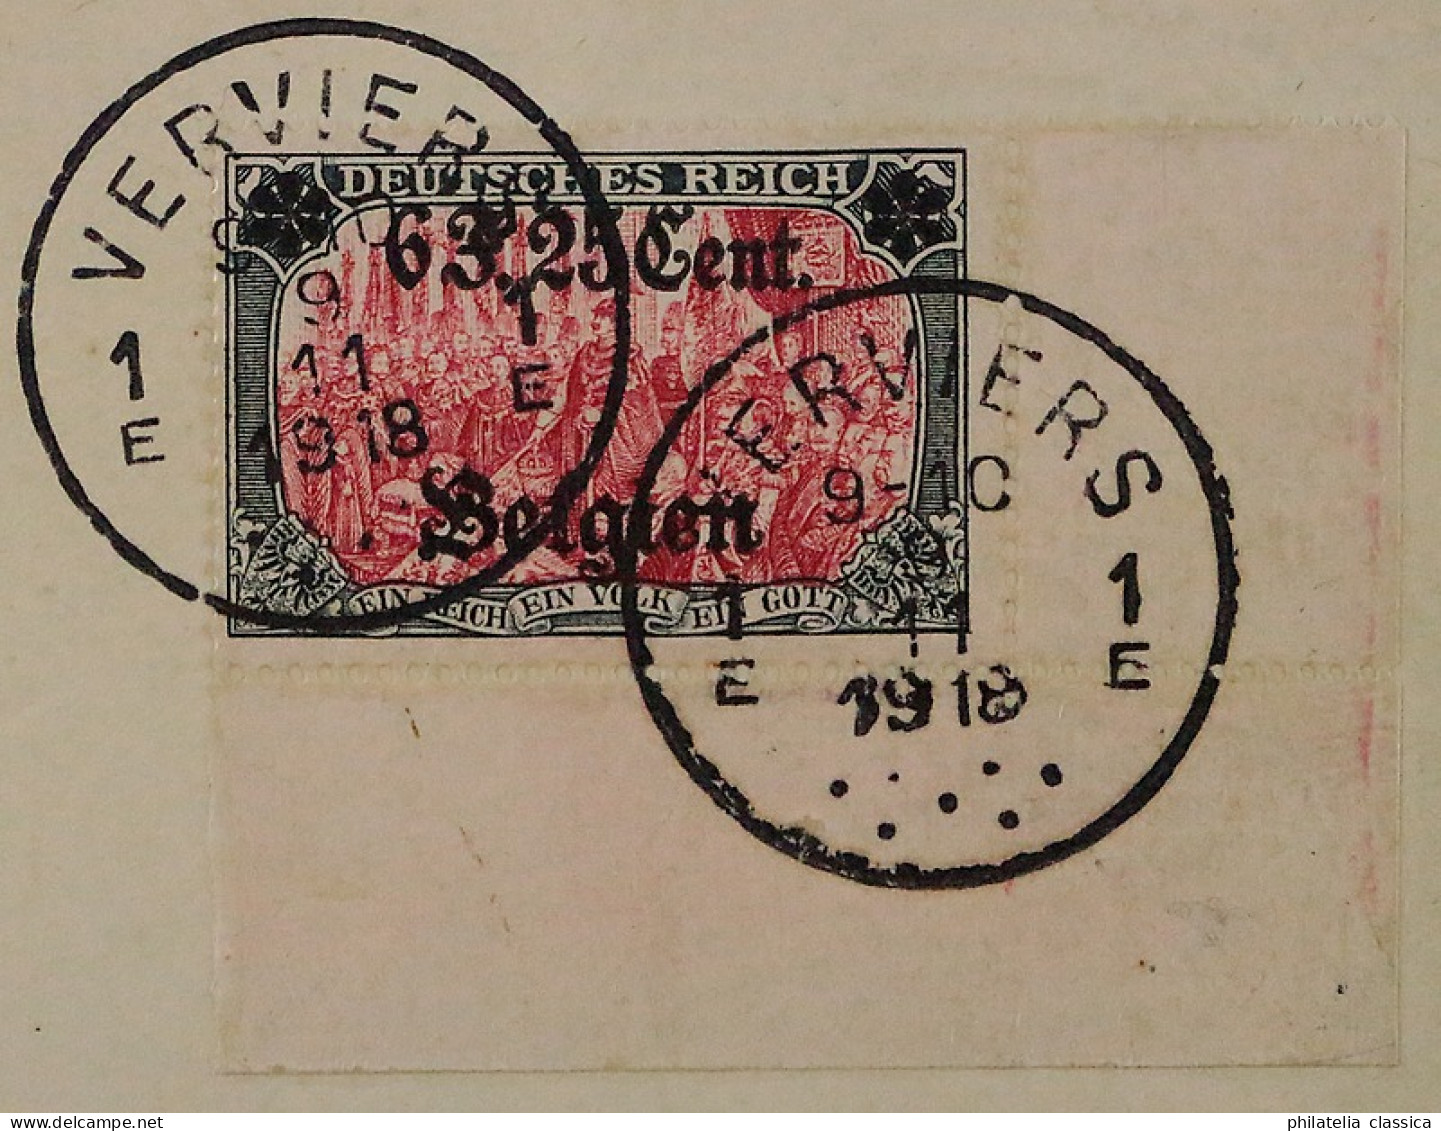 1916, I. Weltkrieg BELGIEN 25 I, Aufdruck 6,25 Fr. Top-Wert Auf R-Brief, 400,-€ - Occupation 1914-18